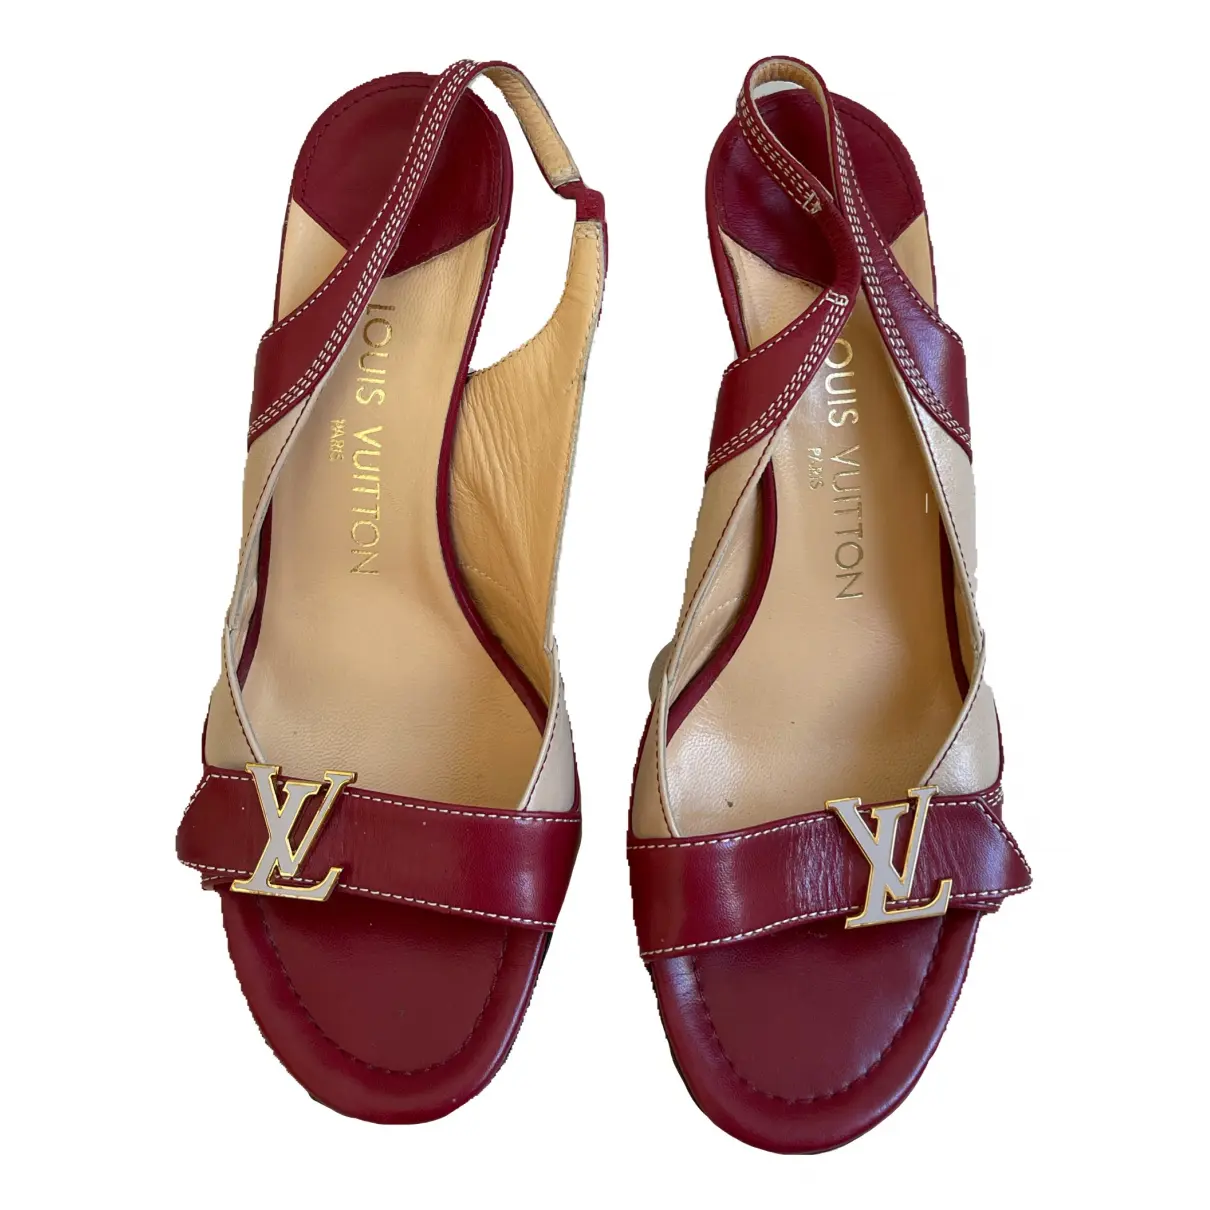 Buy Louis Vuitton Leather sandal online